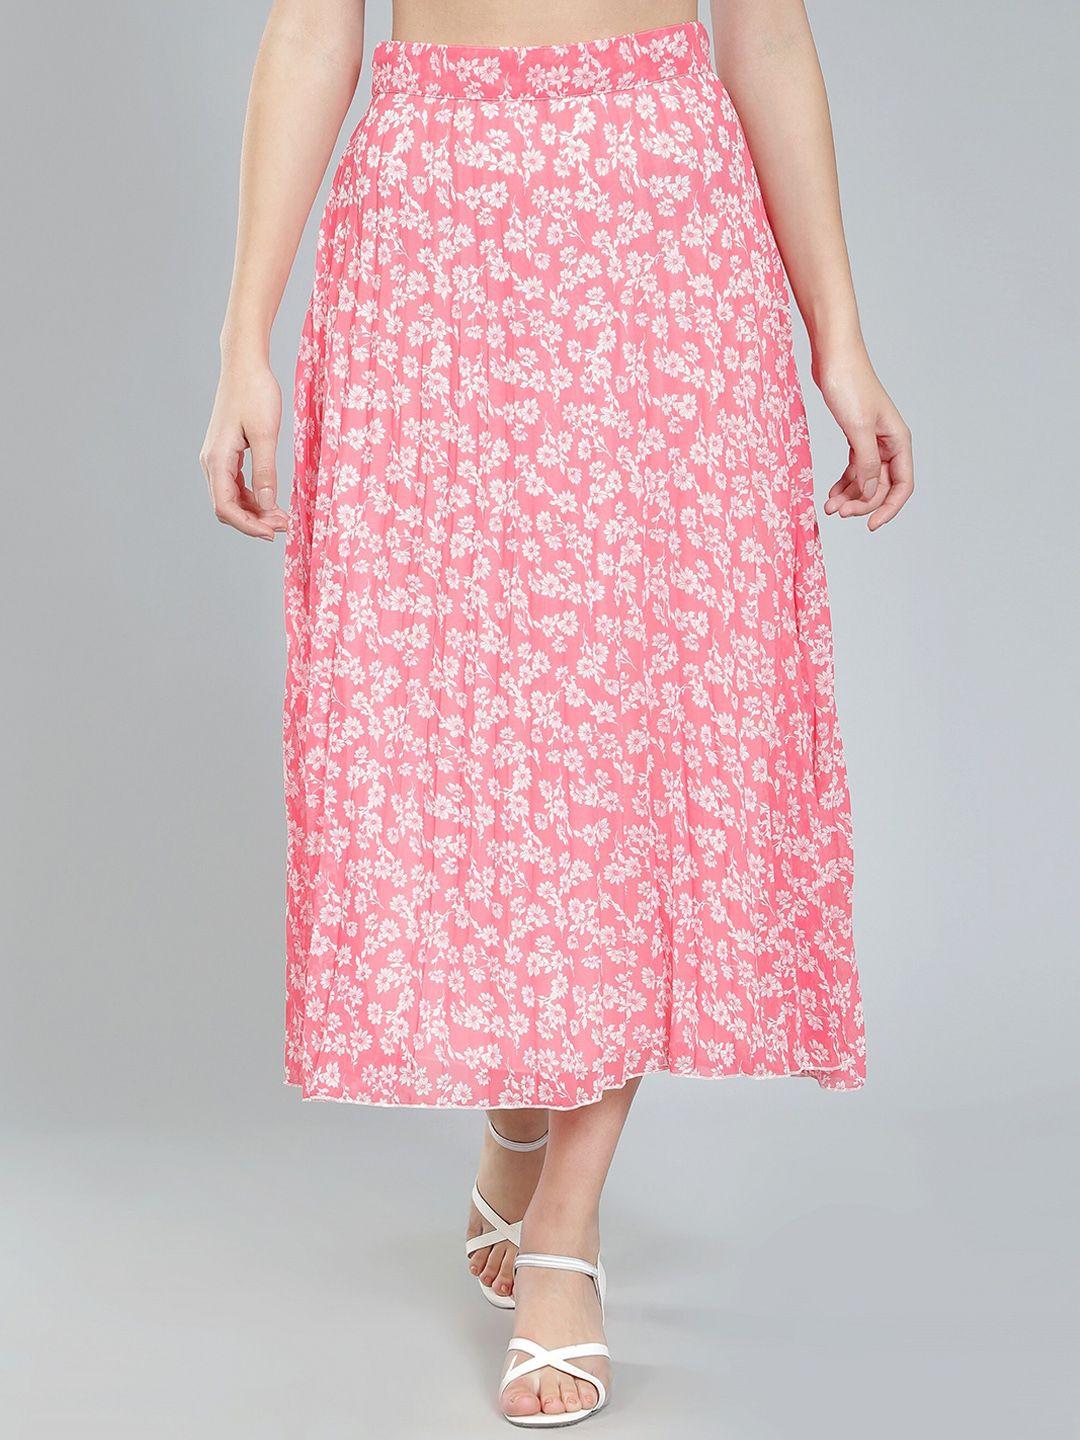 nuevosdamas-floral-printed-georgette-midi-flared-skirt